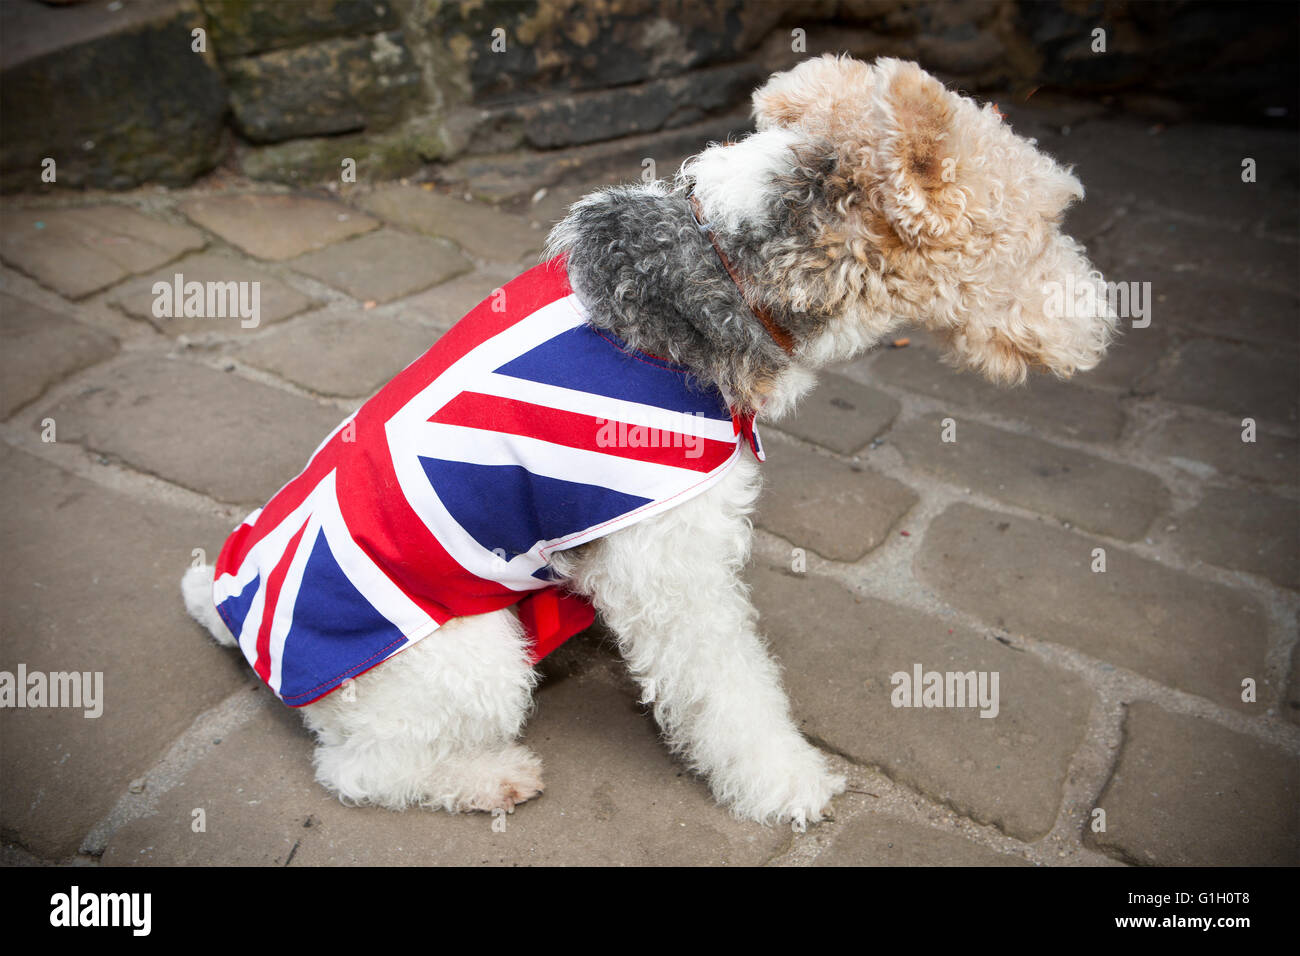 Ein Hund Union Jack England Flagge Regenmantel Mantel Hunde Hunde Rasse Tragen Tragen Von Pet Mantel Winter Wetter Warm Warme Pet Kleidung Stockfotografie Alamy